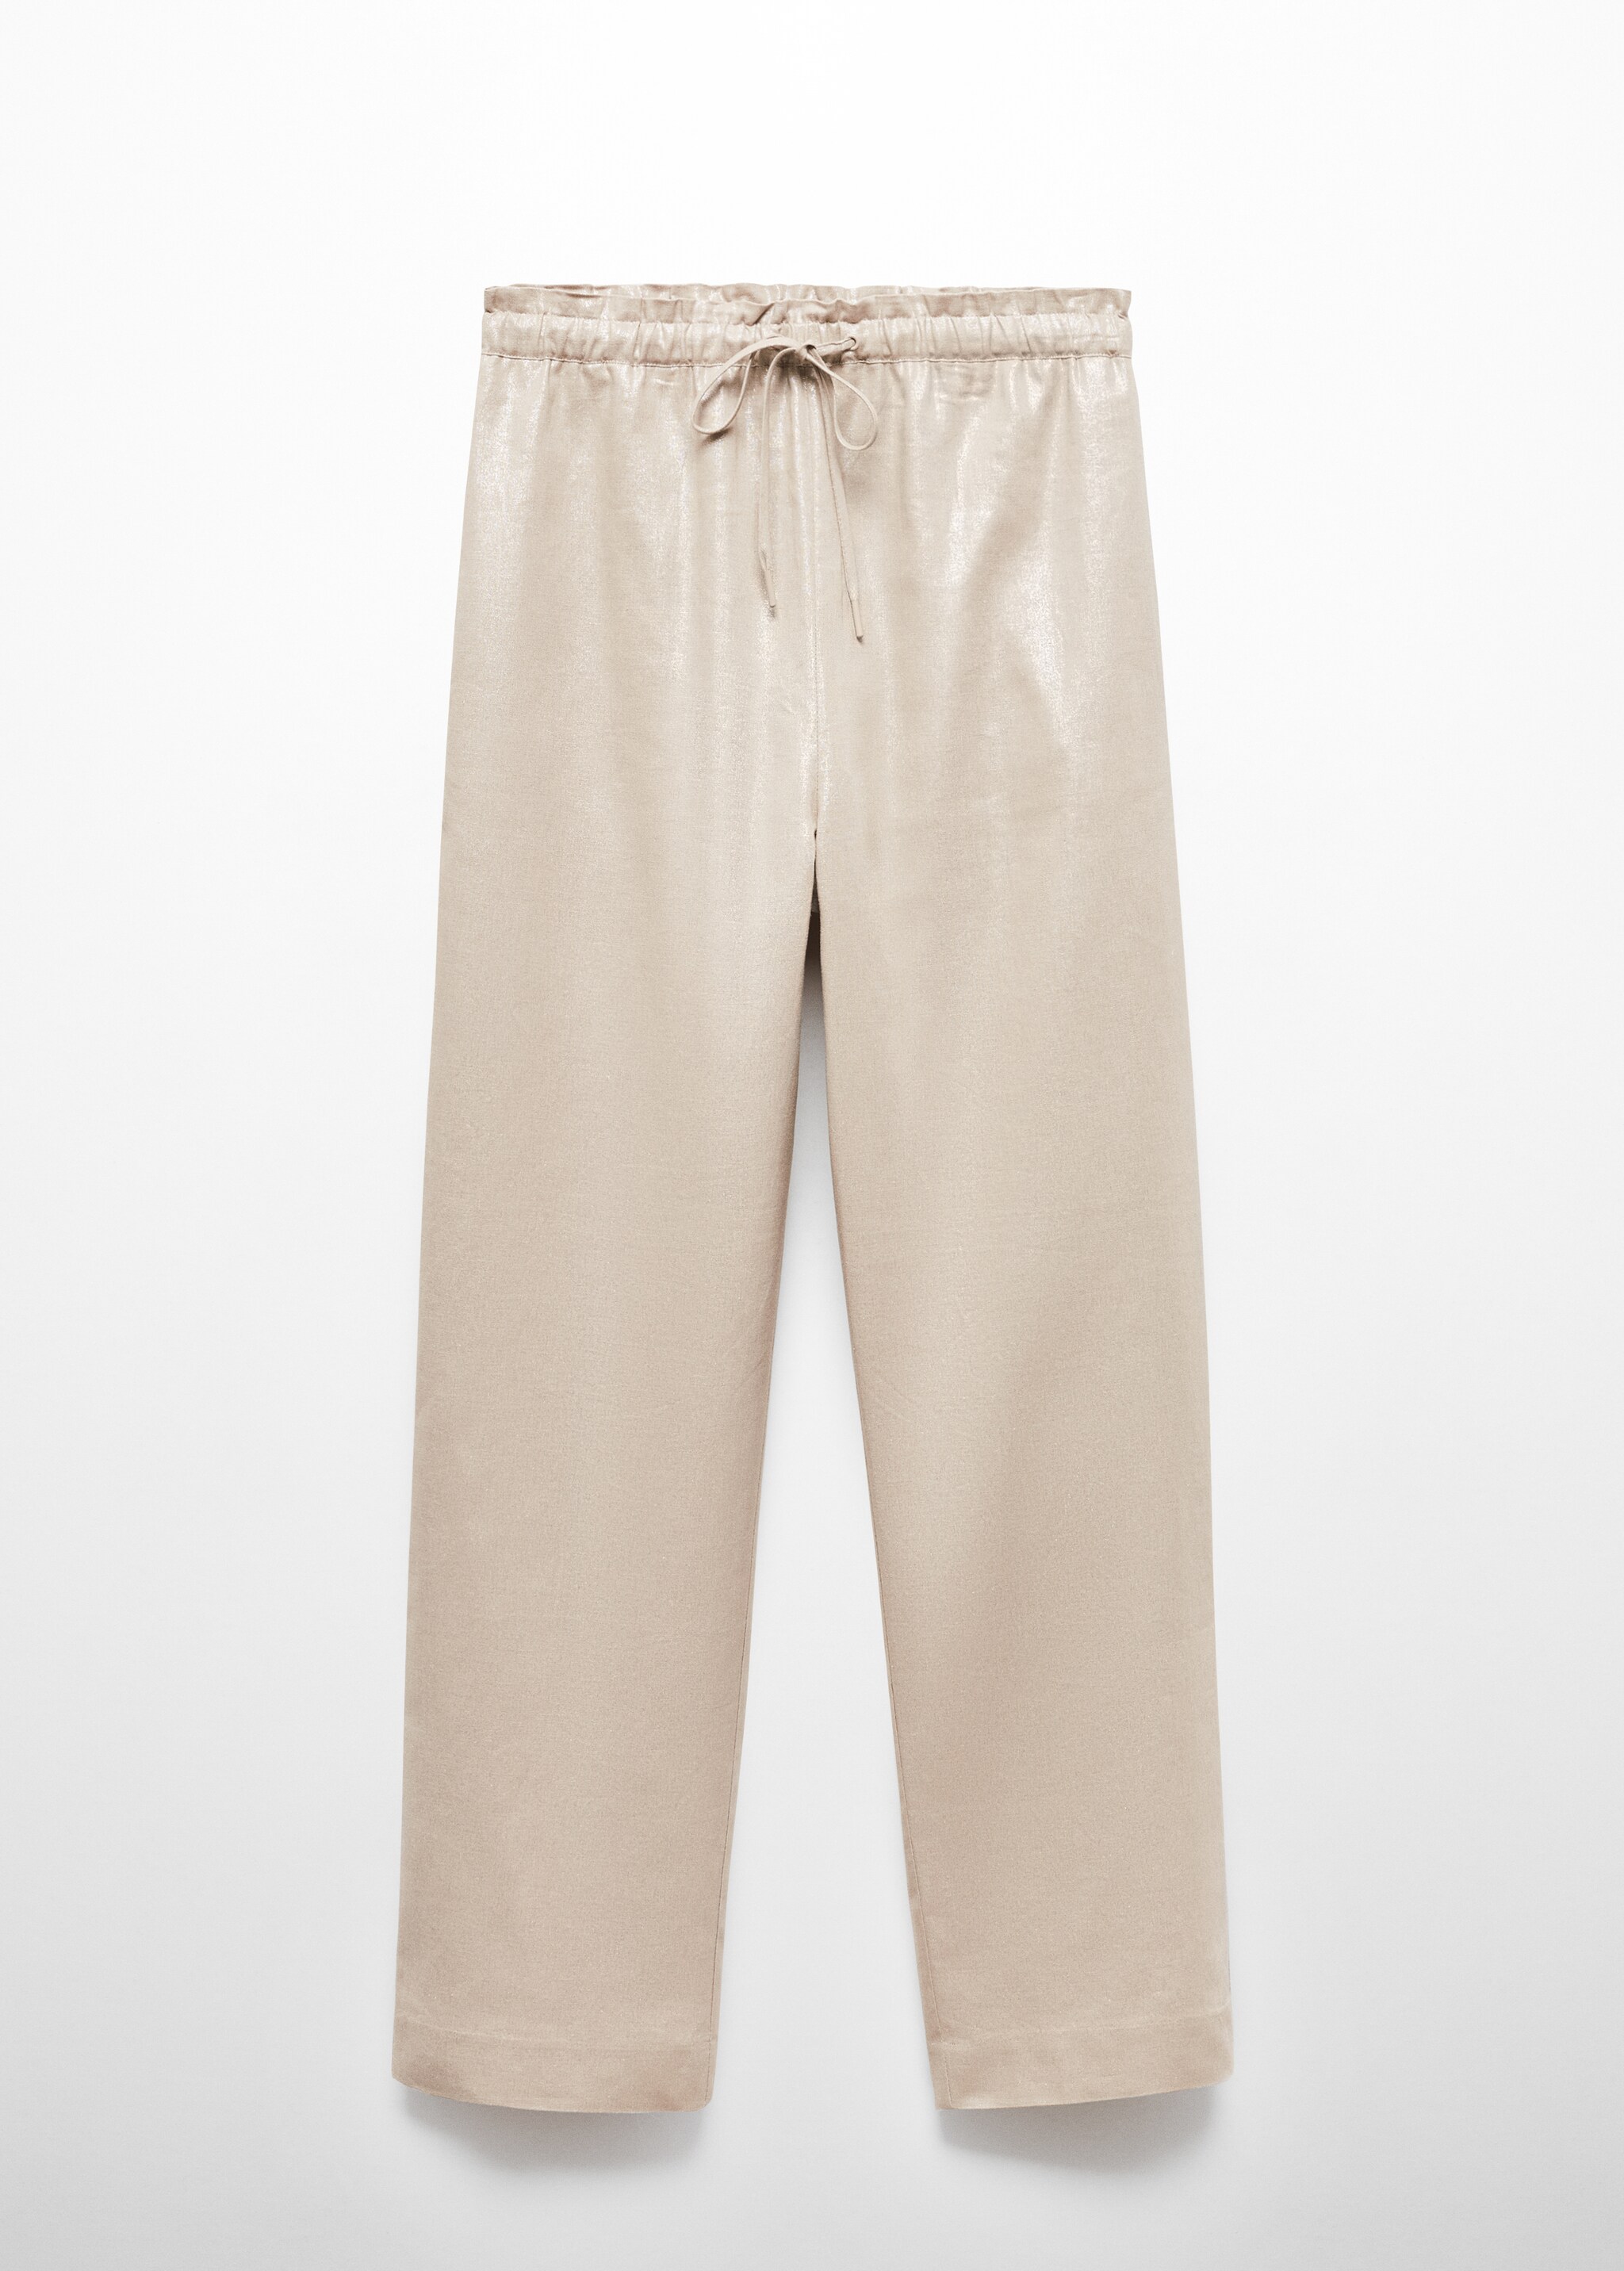 Pantalón lino cintura elástica - Artículo sin modelo